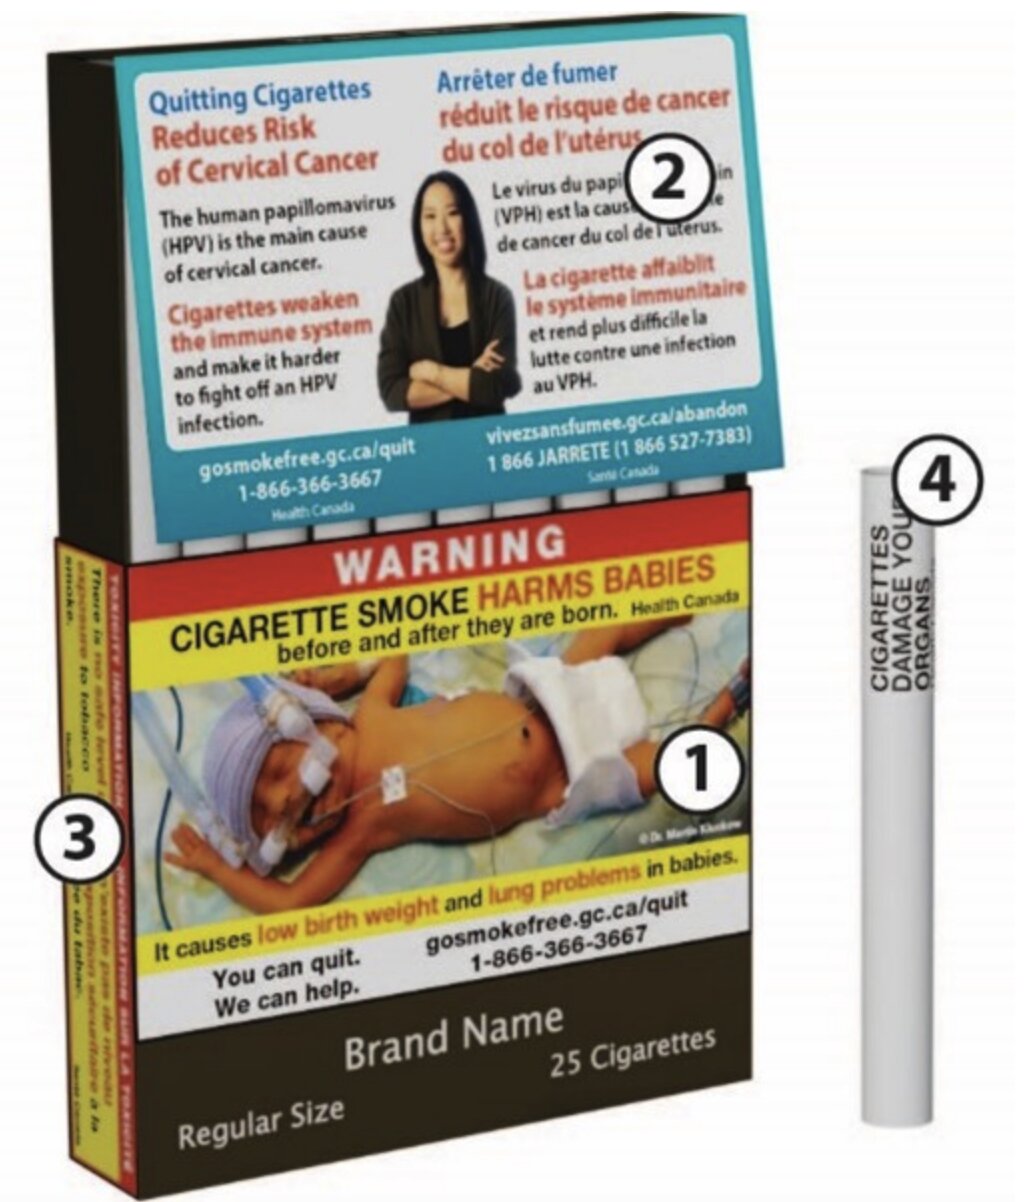 カナダのタバコ・パッケージの警告表示の例。タバコの警告表示や健康情報、タバコの毒性情報、禁煙サポートへの連絡先など、1本ずつの警告表示。カナダ保健省HPより